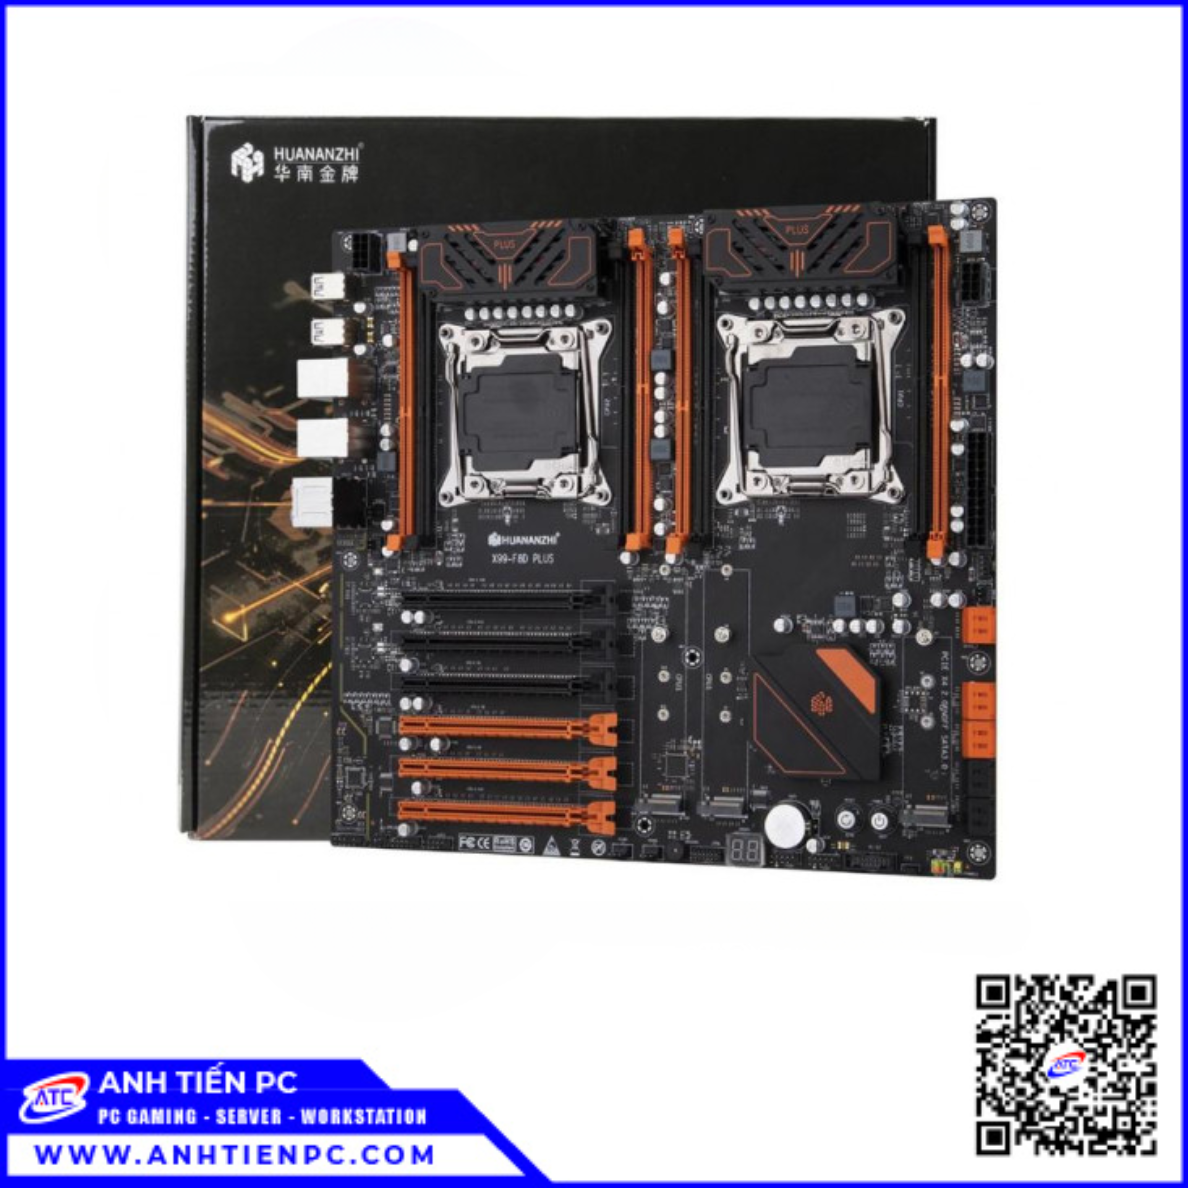 Mainboard  Huananzhi X99 F8D Plus (LGA 2011-3, Intel C612, E-ATX, 8 Khe Ram DDR4)